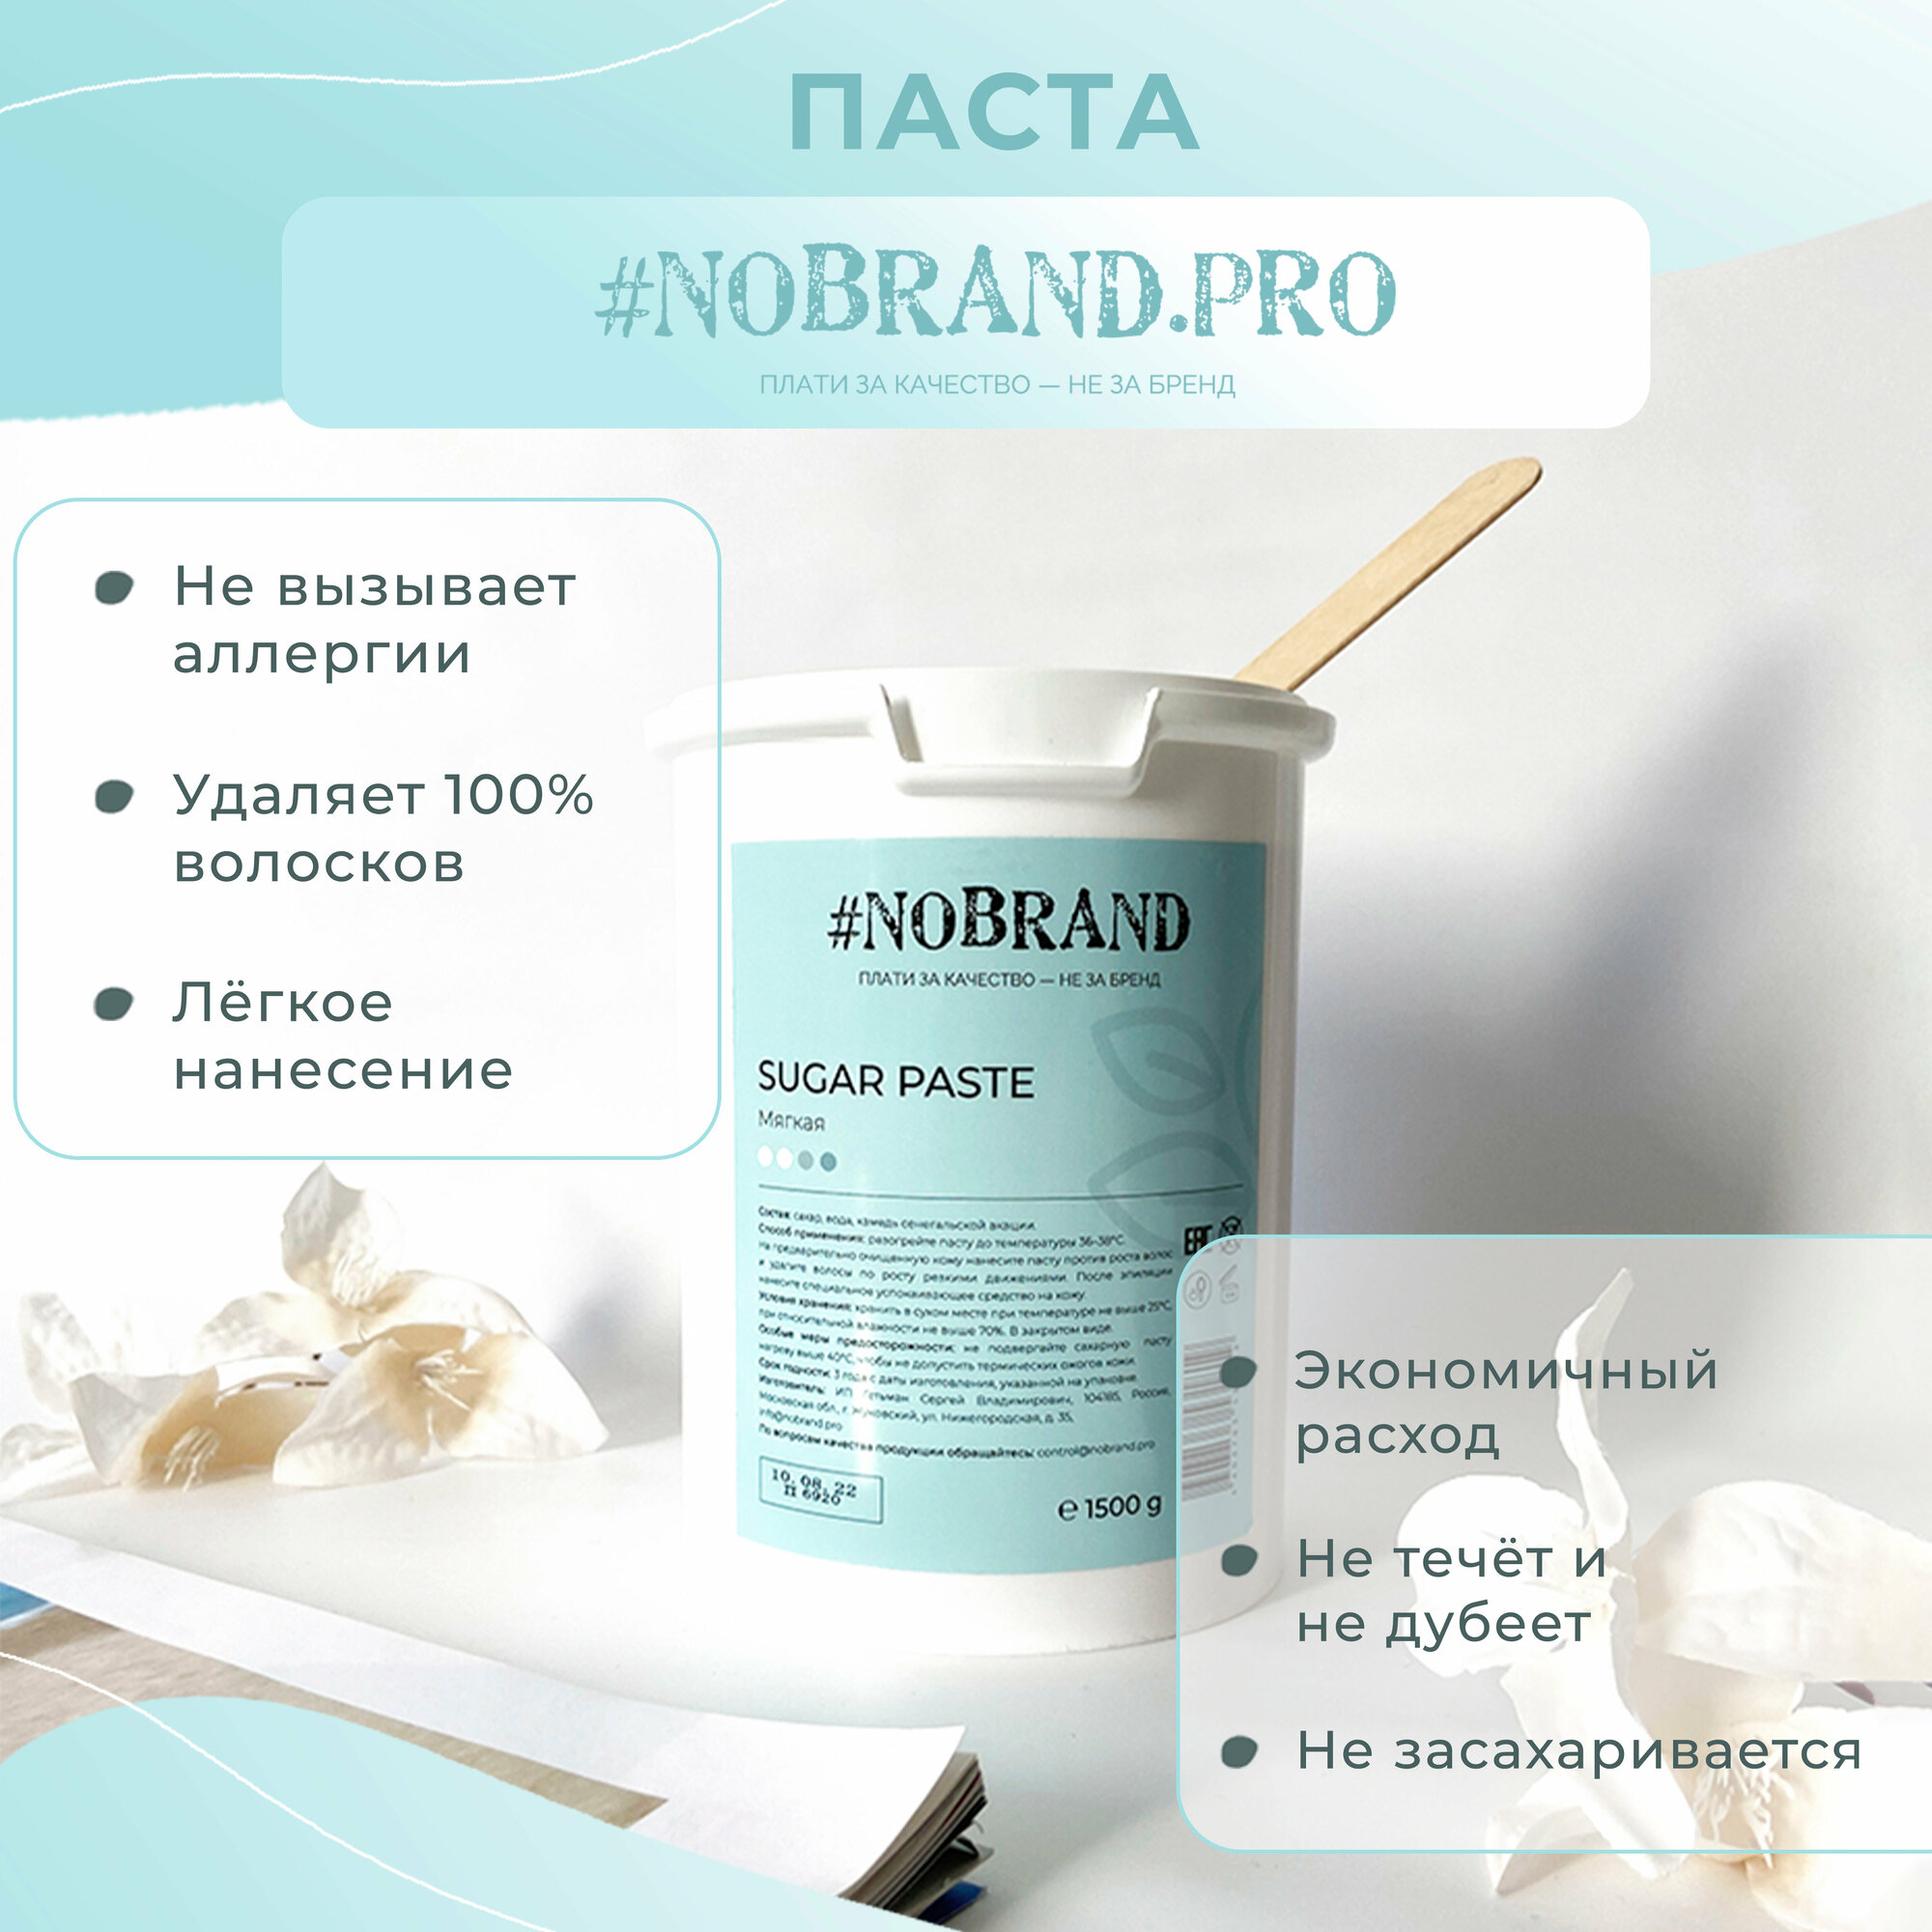 NOBRAND.PRO Сахарная паста для шугаринга new formula мягкая плотность для депиляции, 1,5 кг. Паста для удаления волос